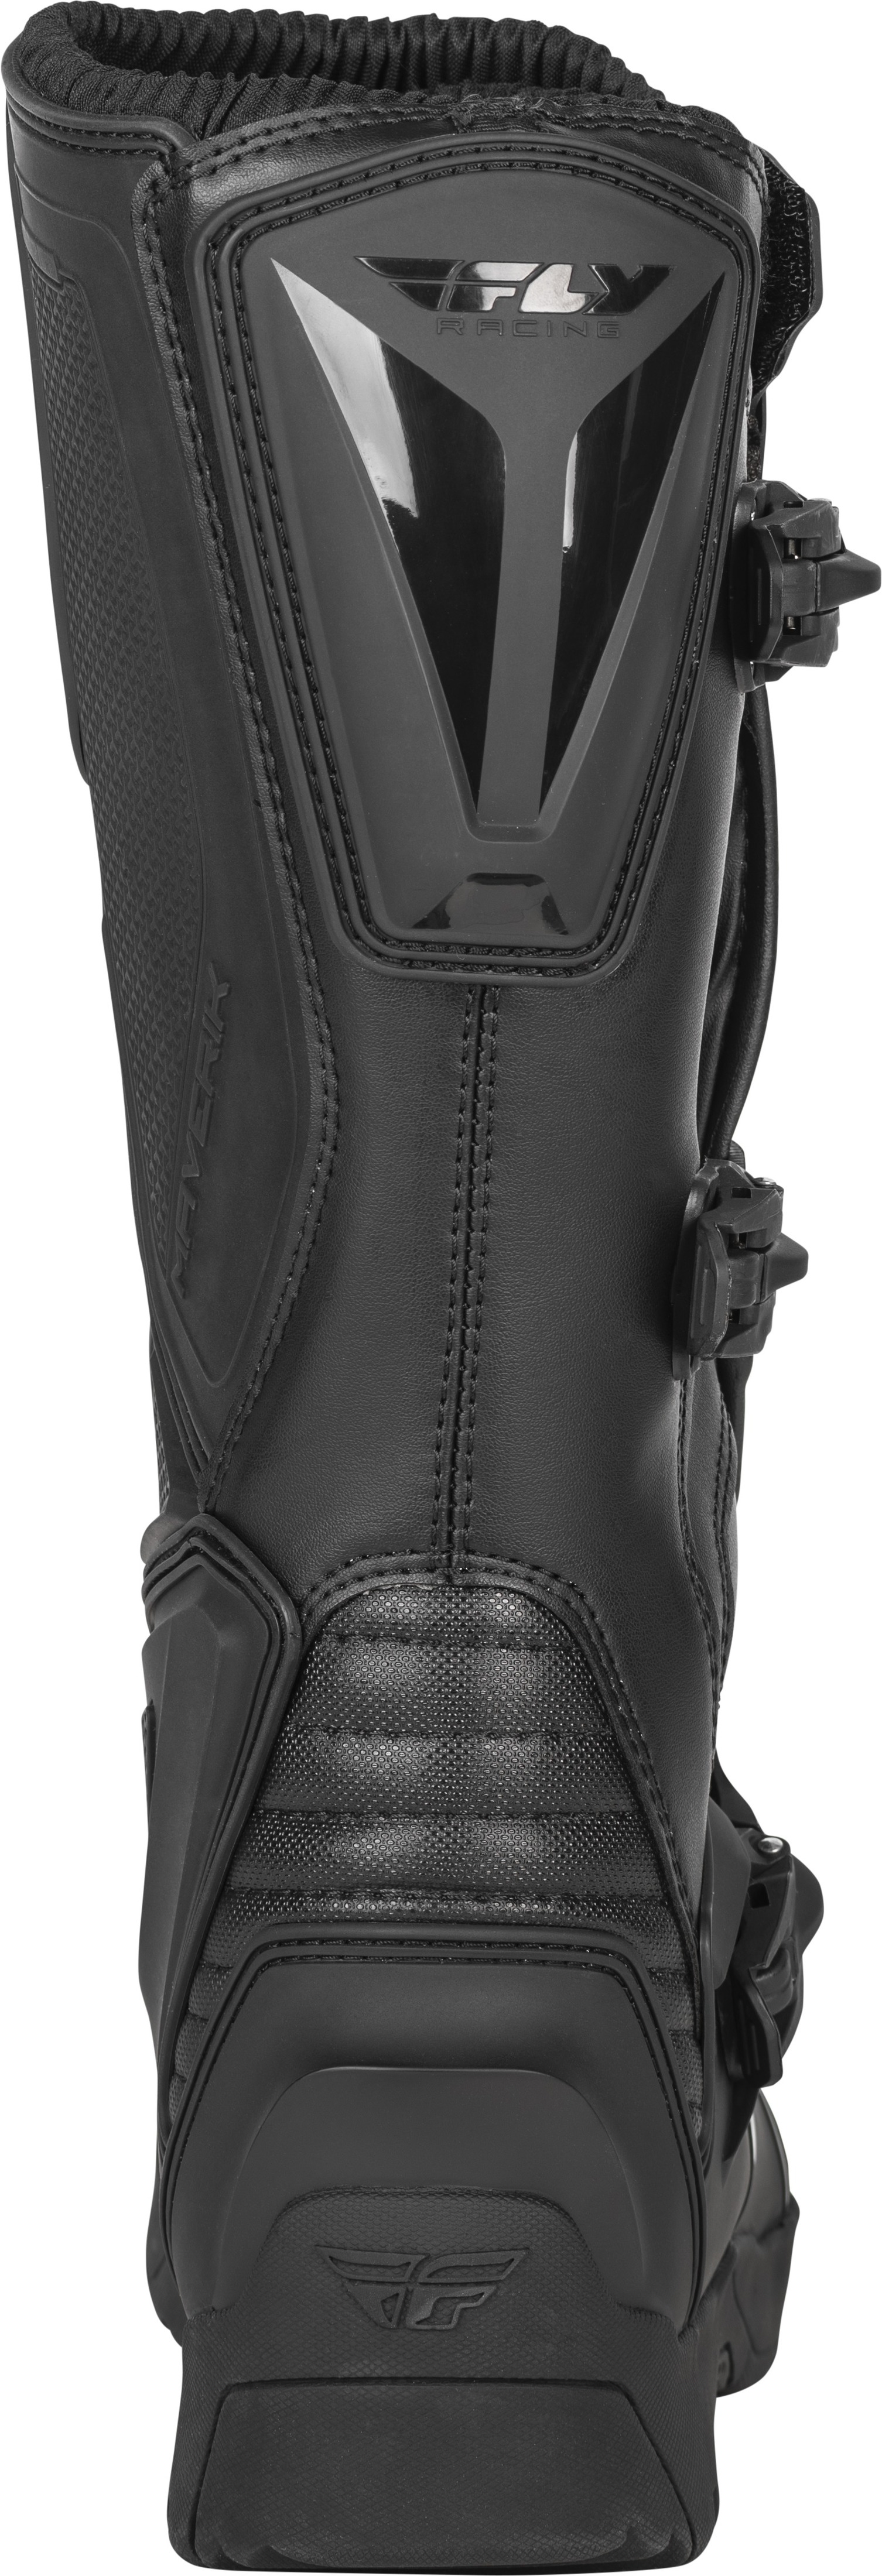 Maverik Enduro Boot Black Size 13 - Click Image to Close